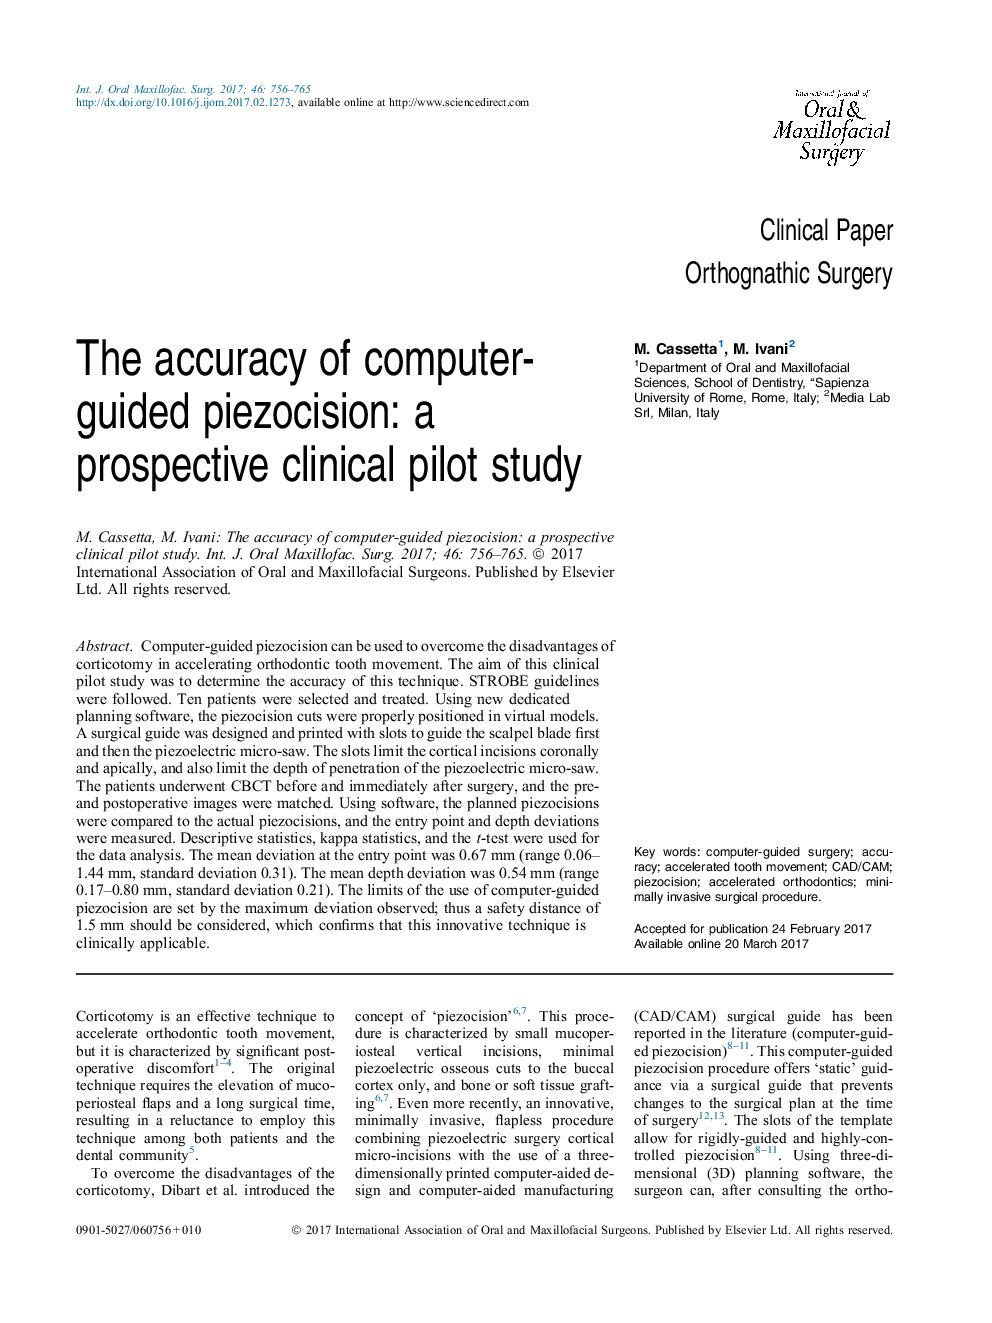 دقت پیزوسیت های کامپیوتری: یک مطالعه بالینی بالقوه بالینی 